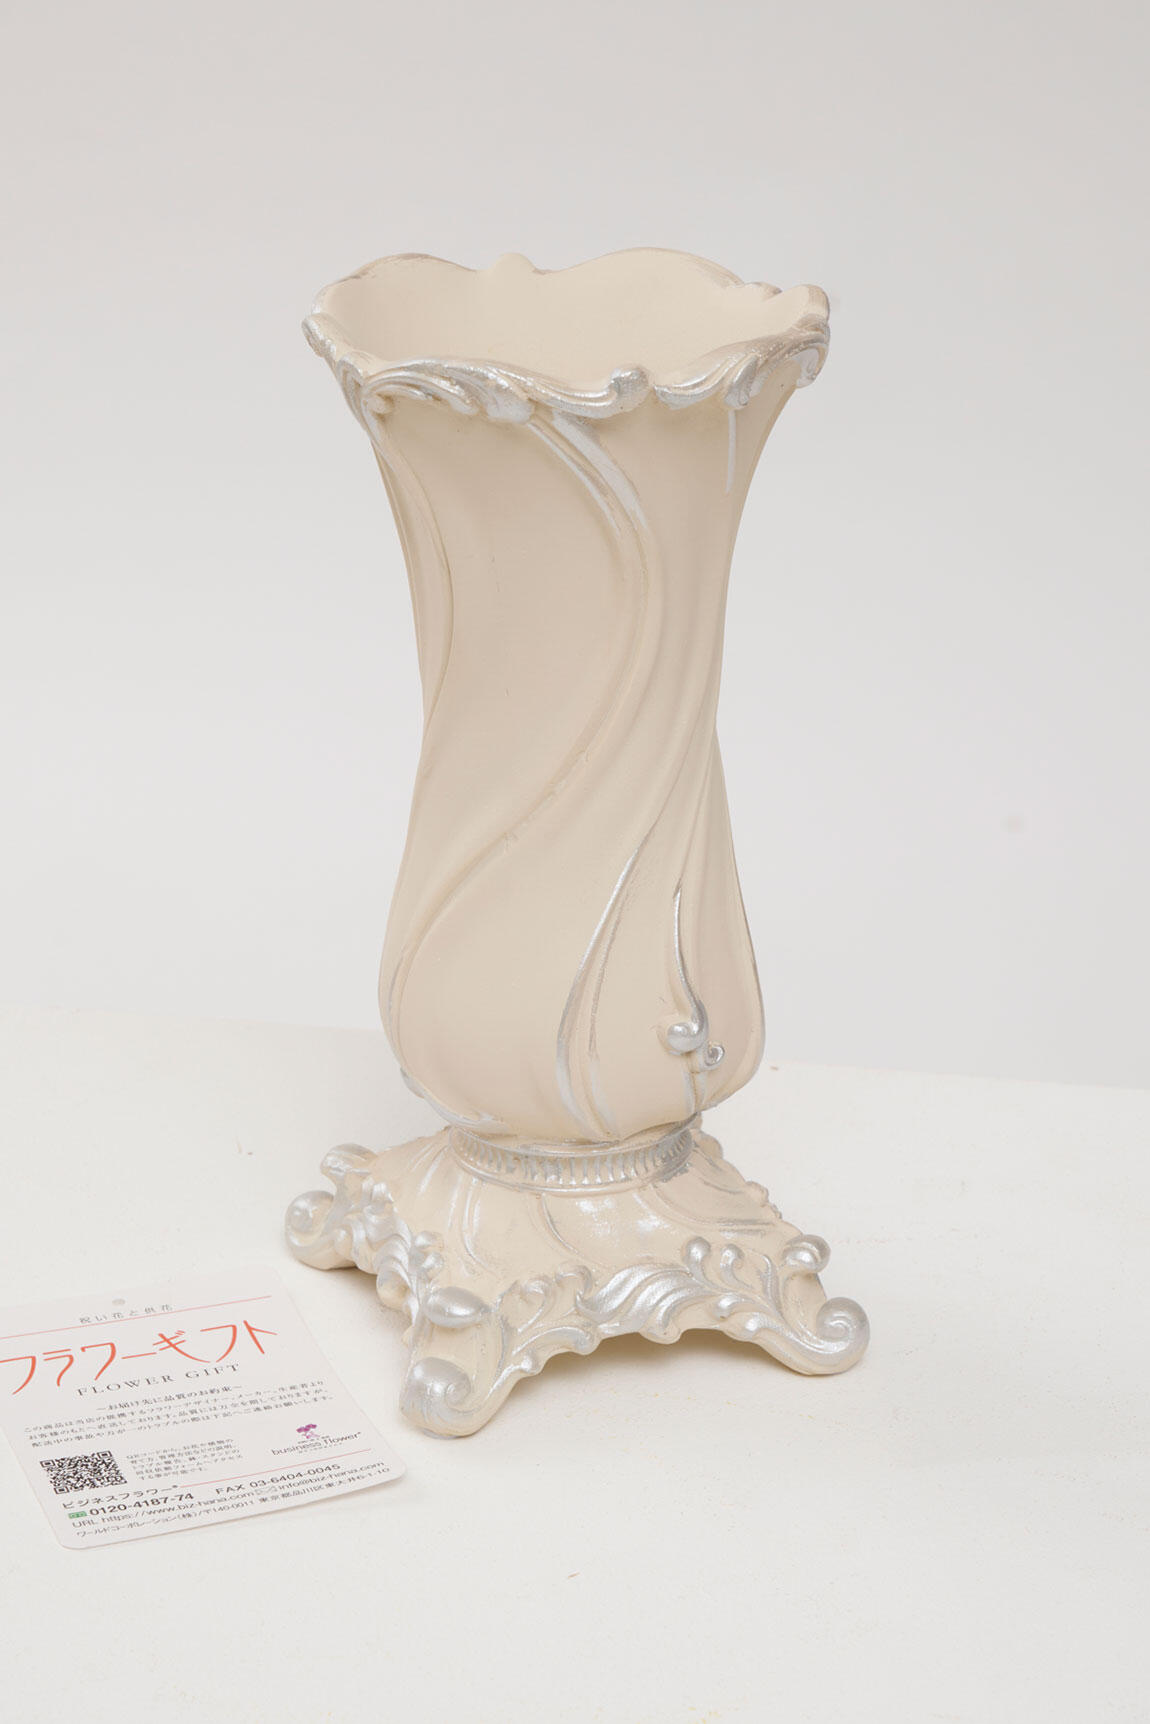 <p>花瓶はアンティーク調のシンプルでおしゃれなデザインが特徴です。樹脂製のため比較的丈夫でフラワーギフトとして贈りやすい花瓶です。</p>